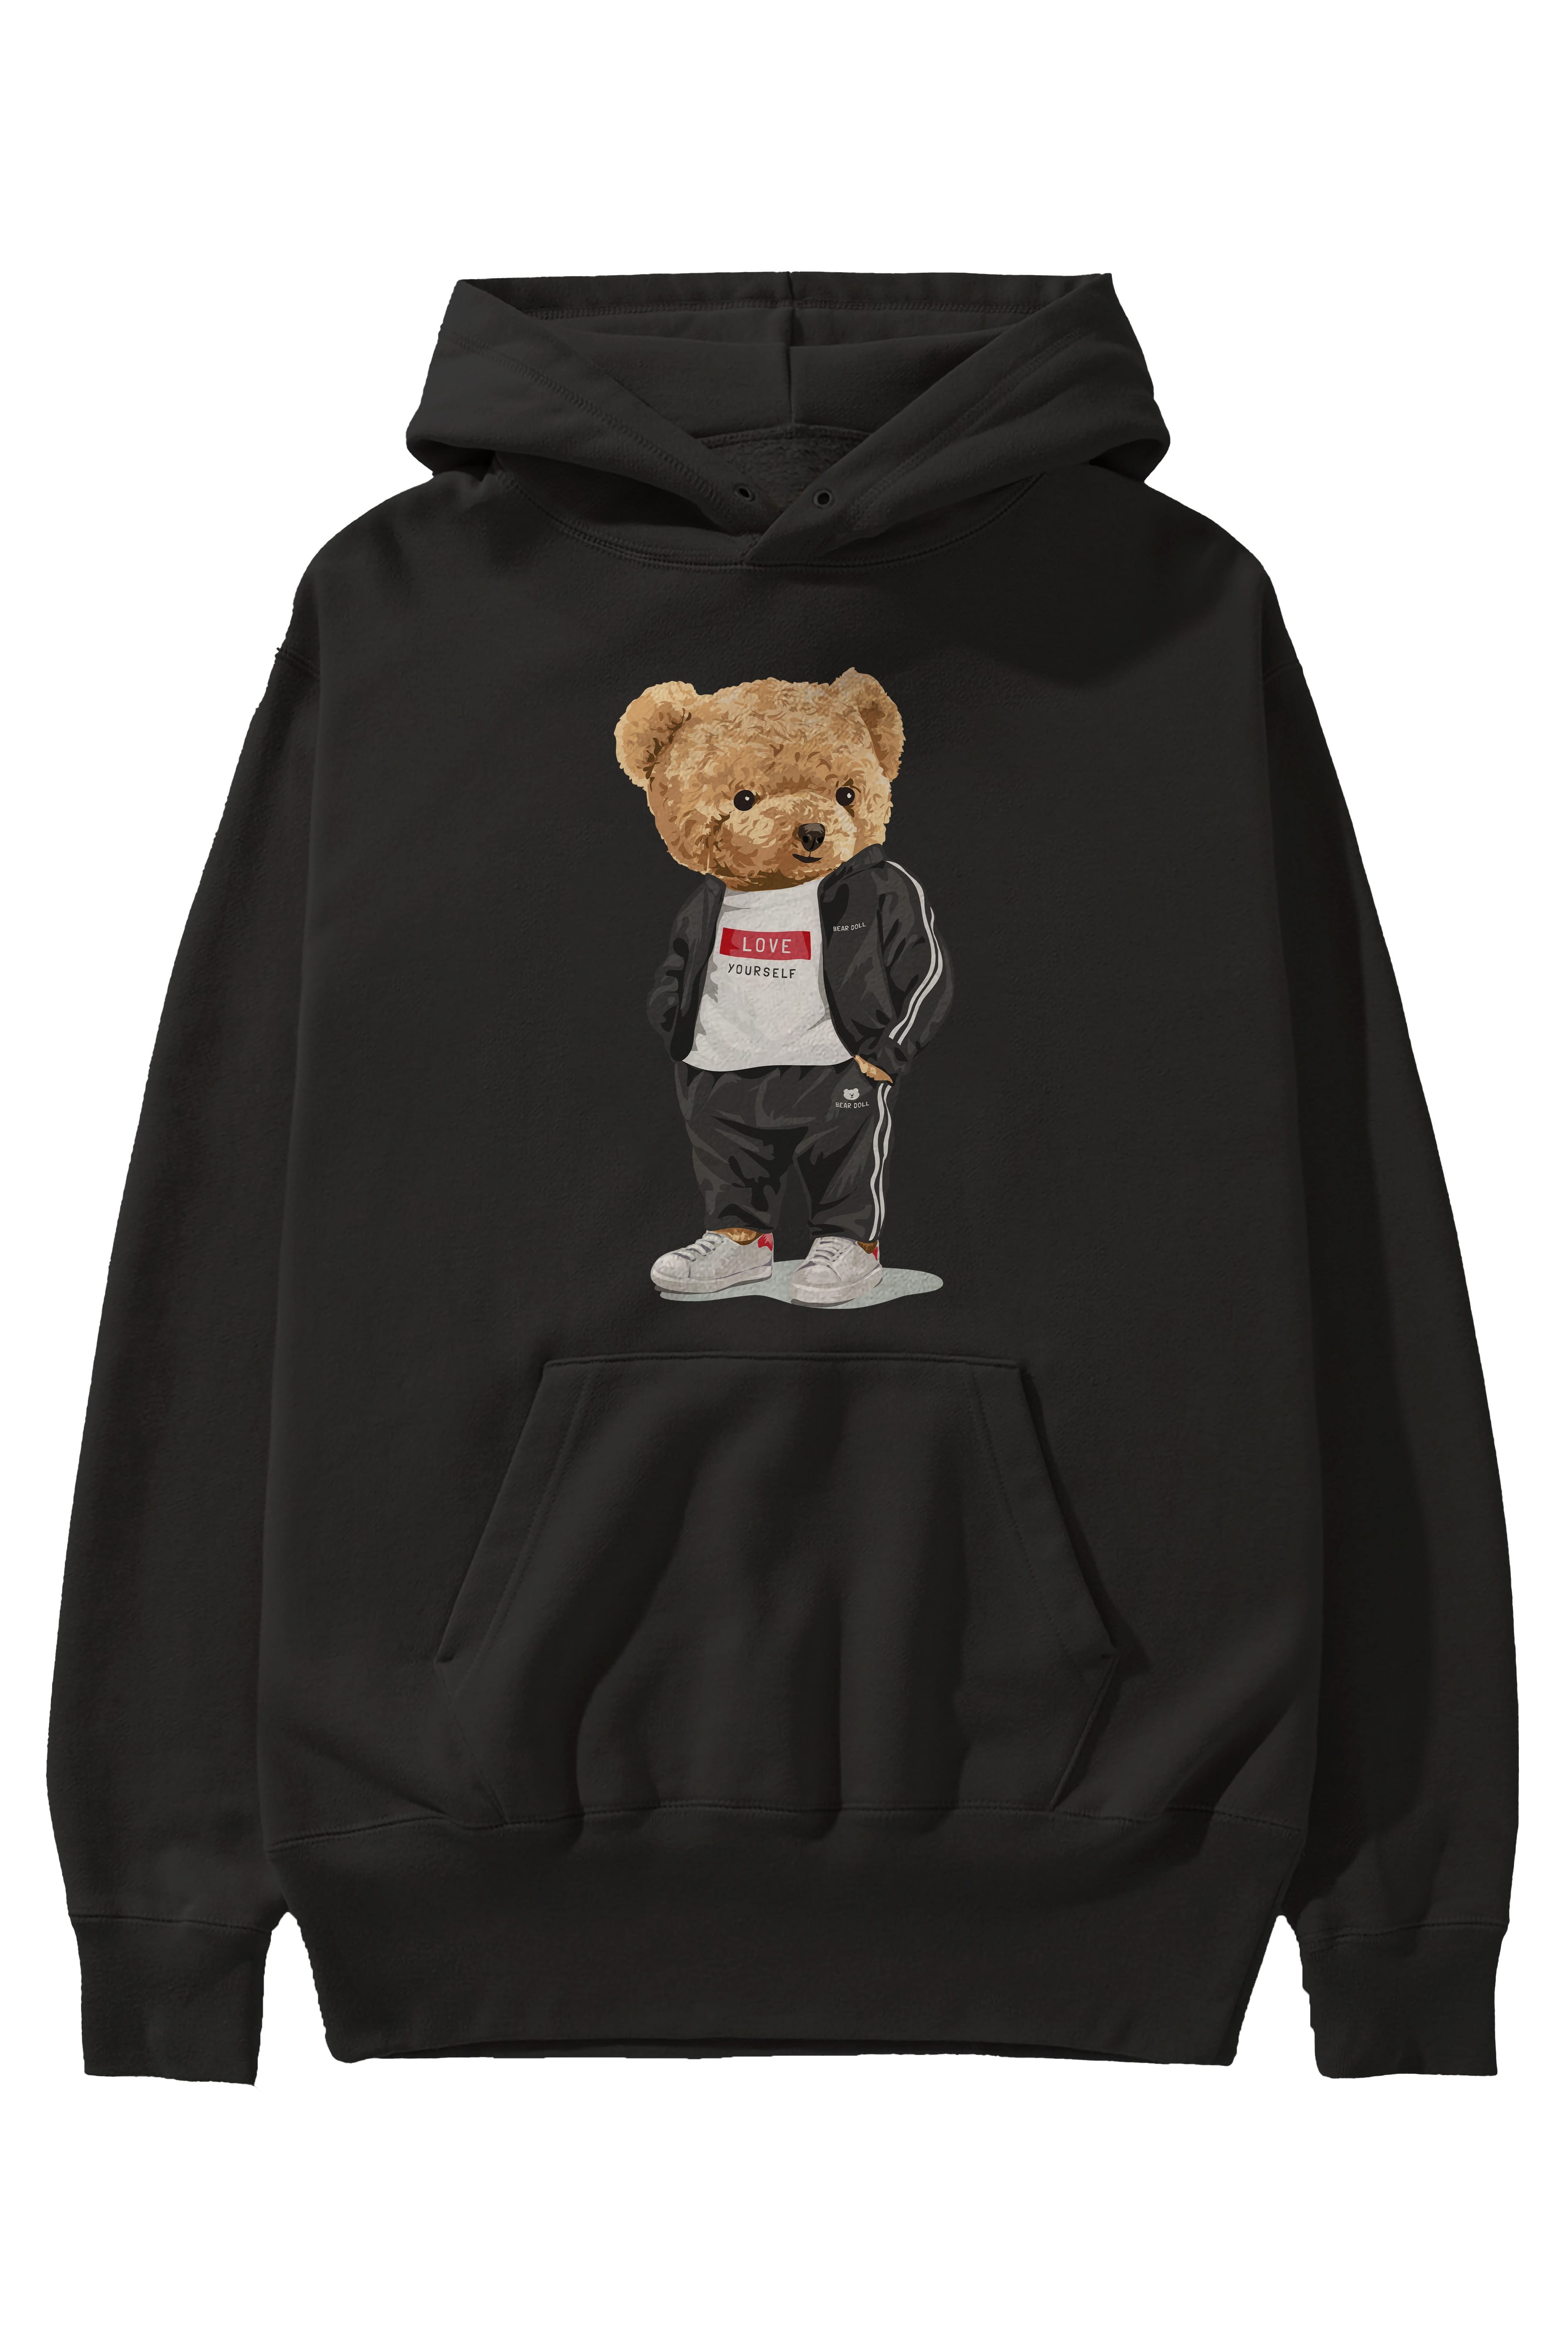 Teddy Bear Love Yourself Ön Baskılı Hoodie Oversize Kapüşonlu Sweatshirt Erkek Kadın Unisex